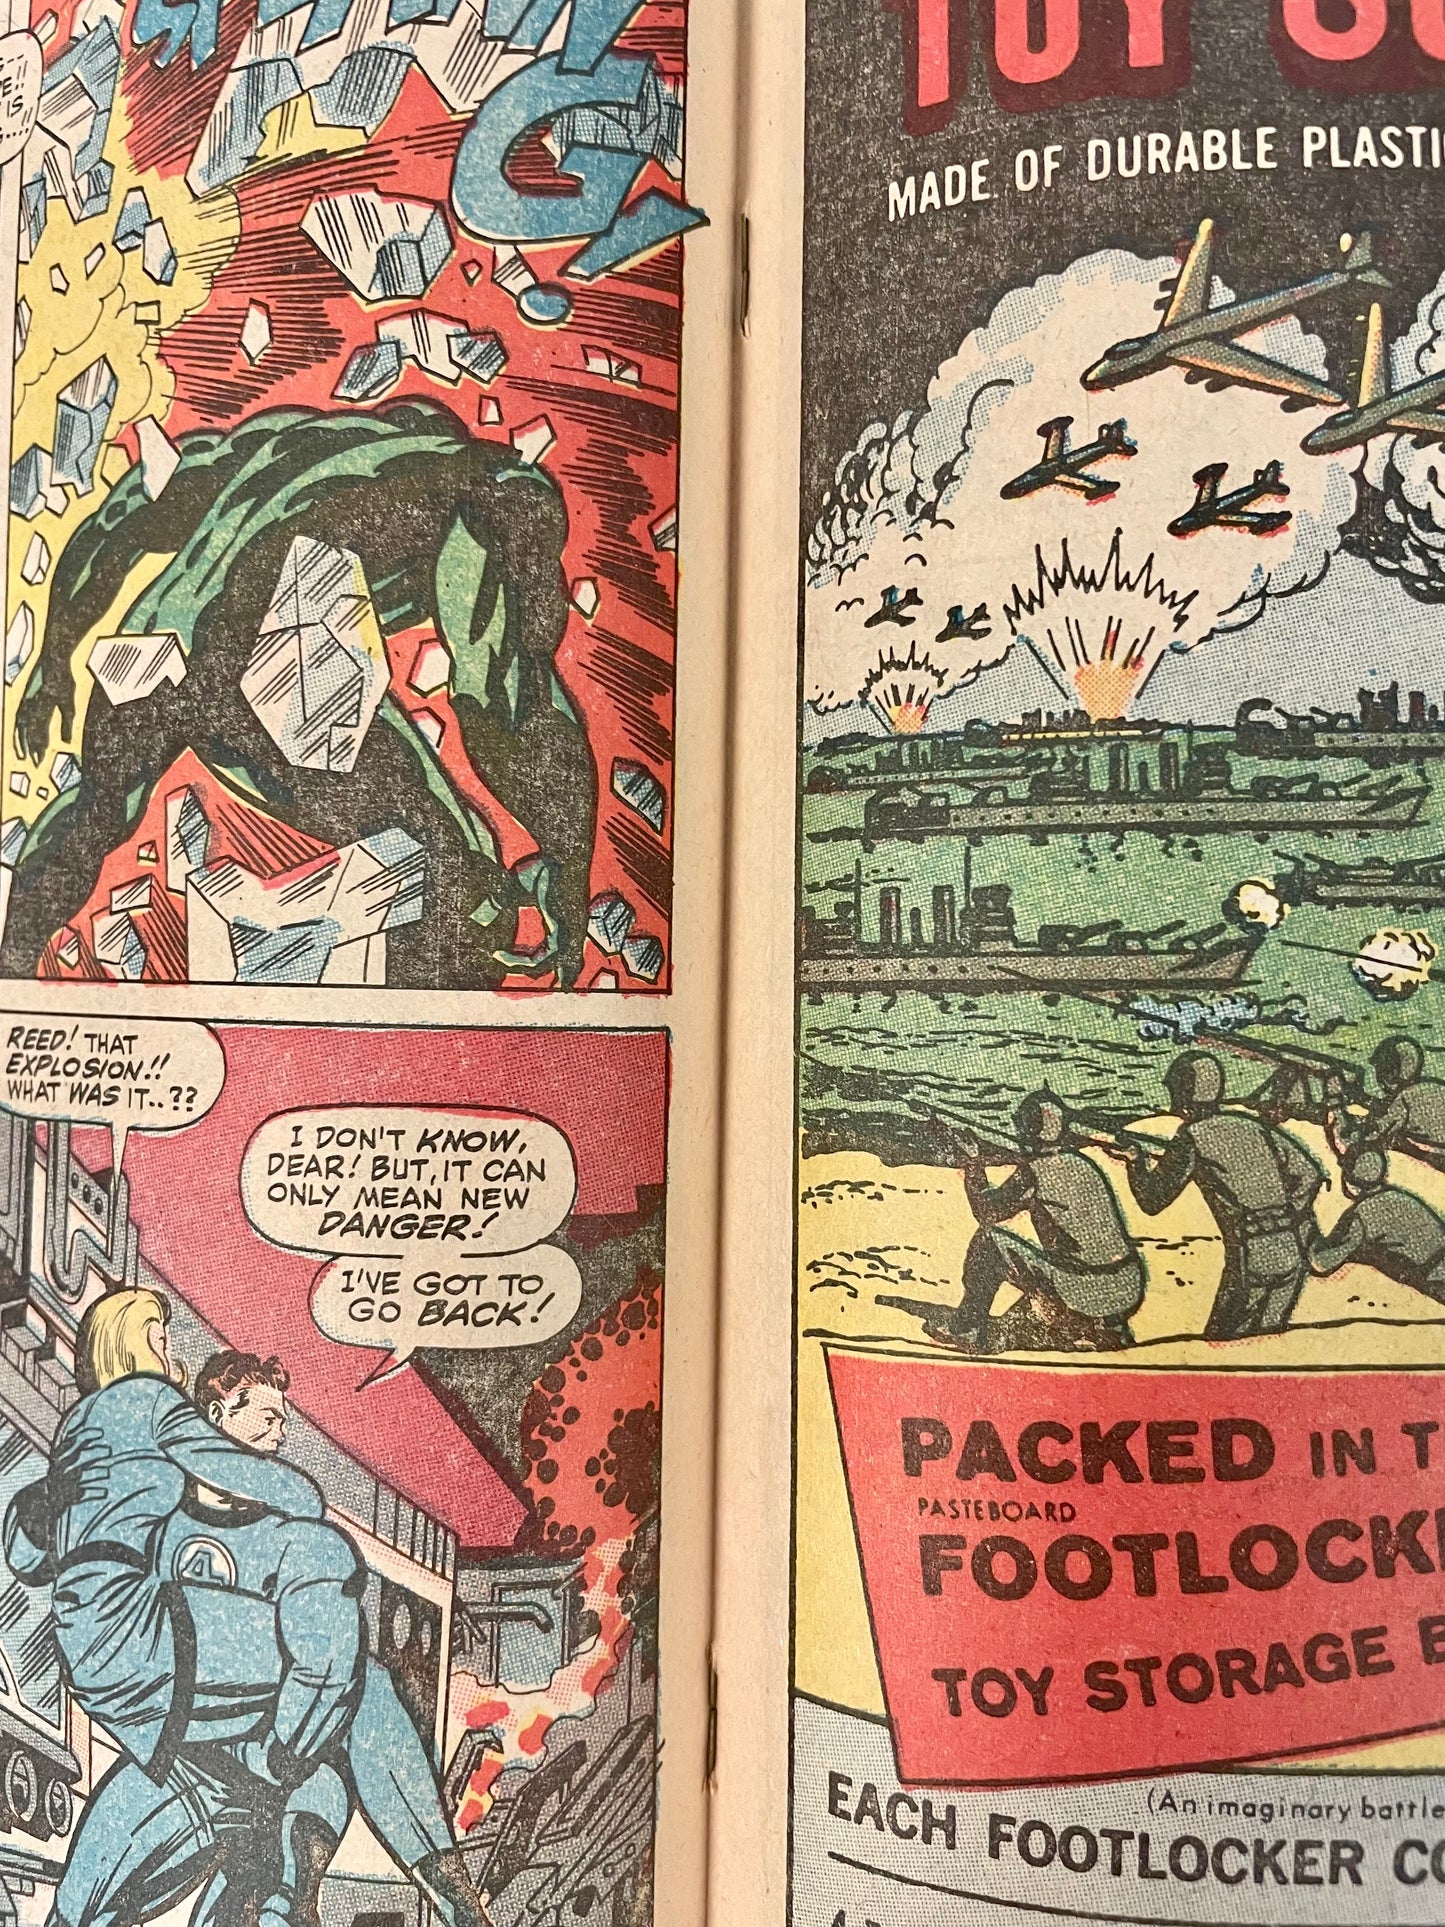 Marvel Comics Fantastic Four #71